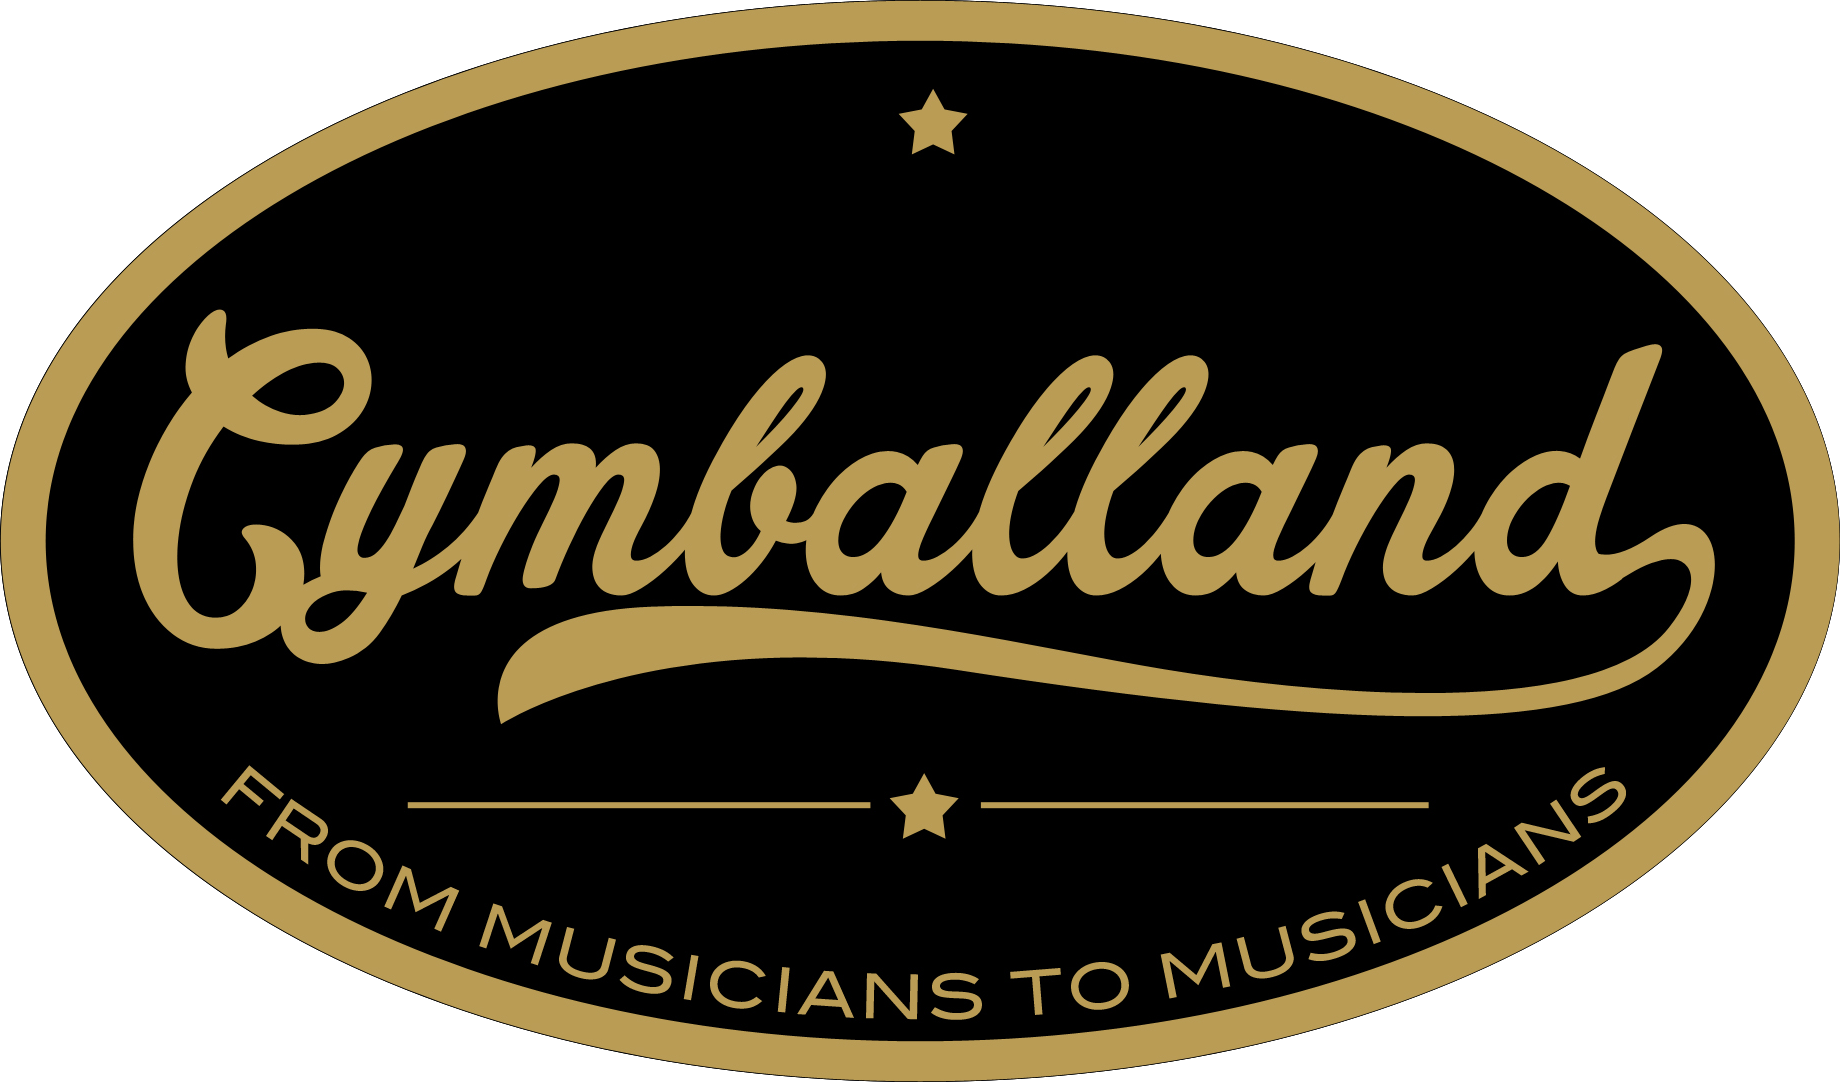 Cymballand